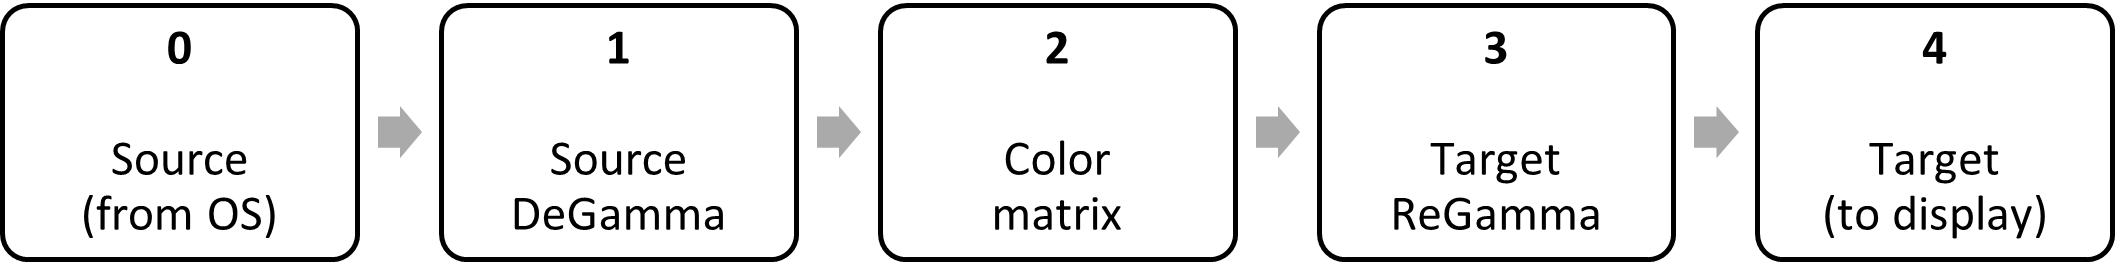 diagrama de bloques: degamma de origen, matriz de color, regamma de destino